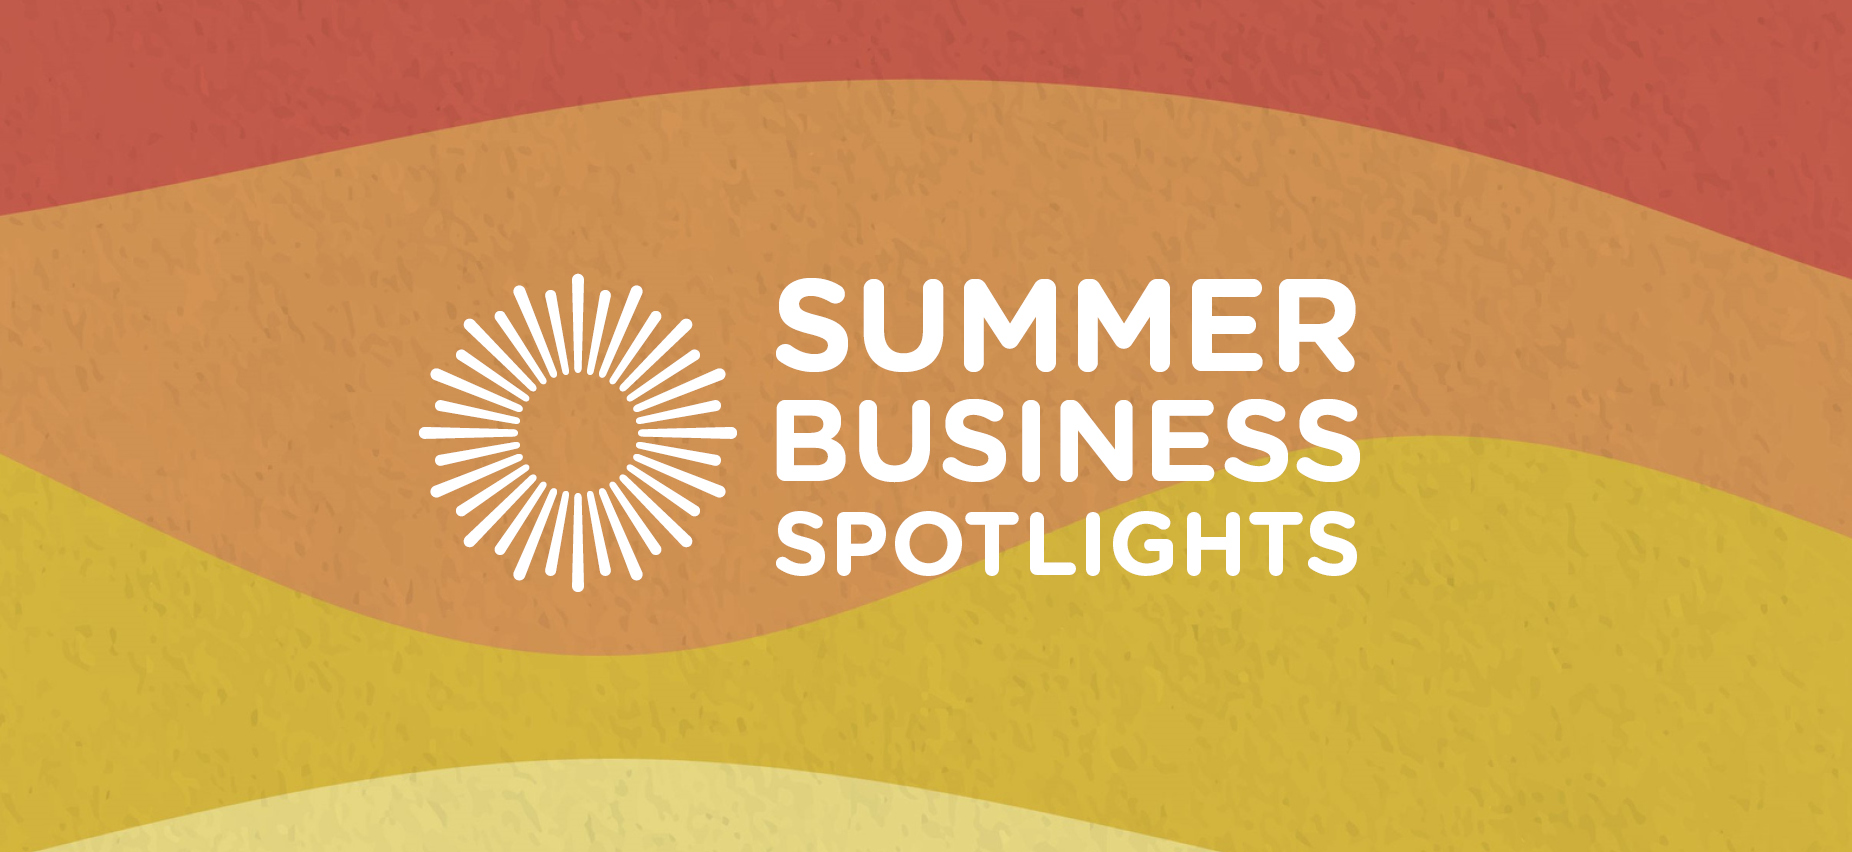 Summer Business Spotlights